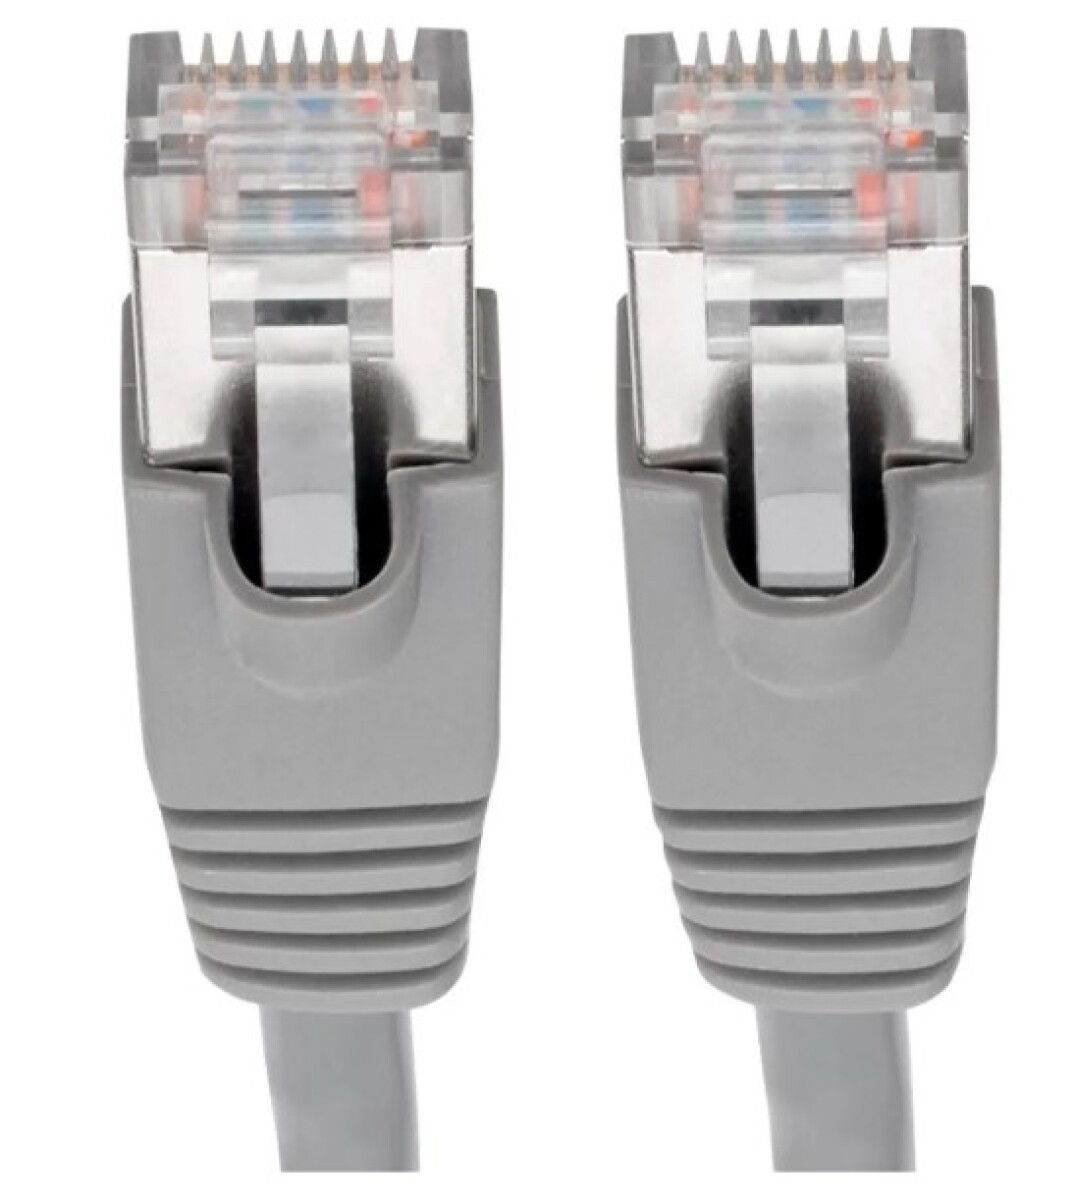 Cables De Red Ethernet Lan De 5 Metros Rj45 